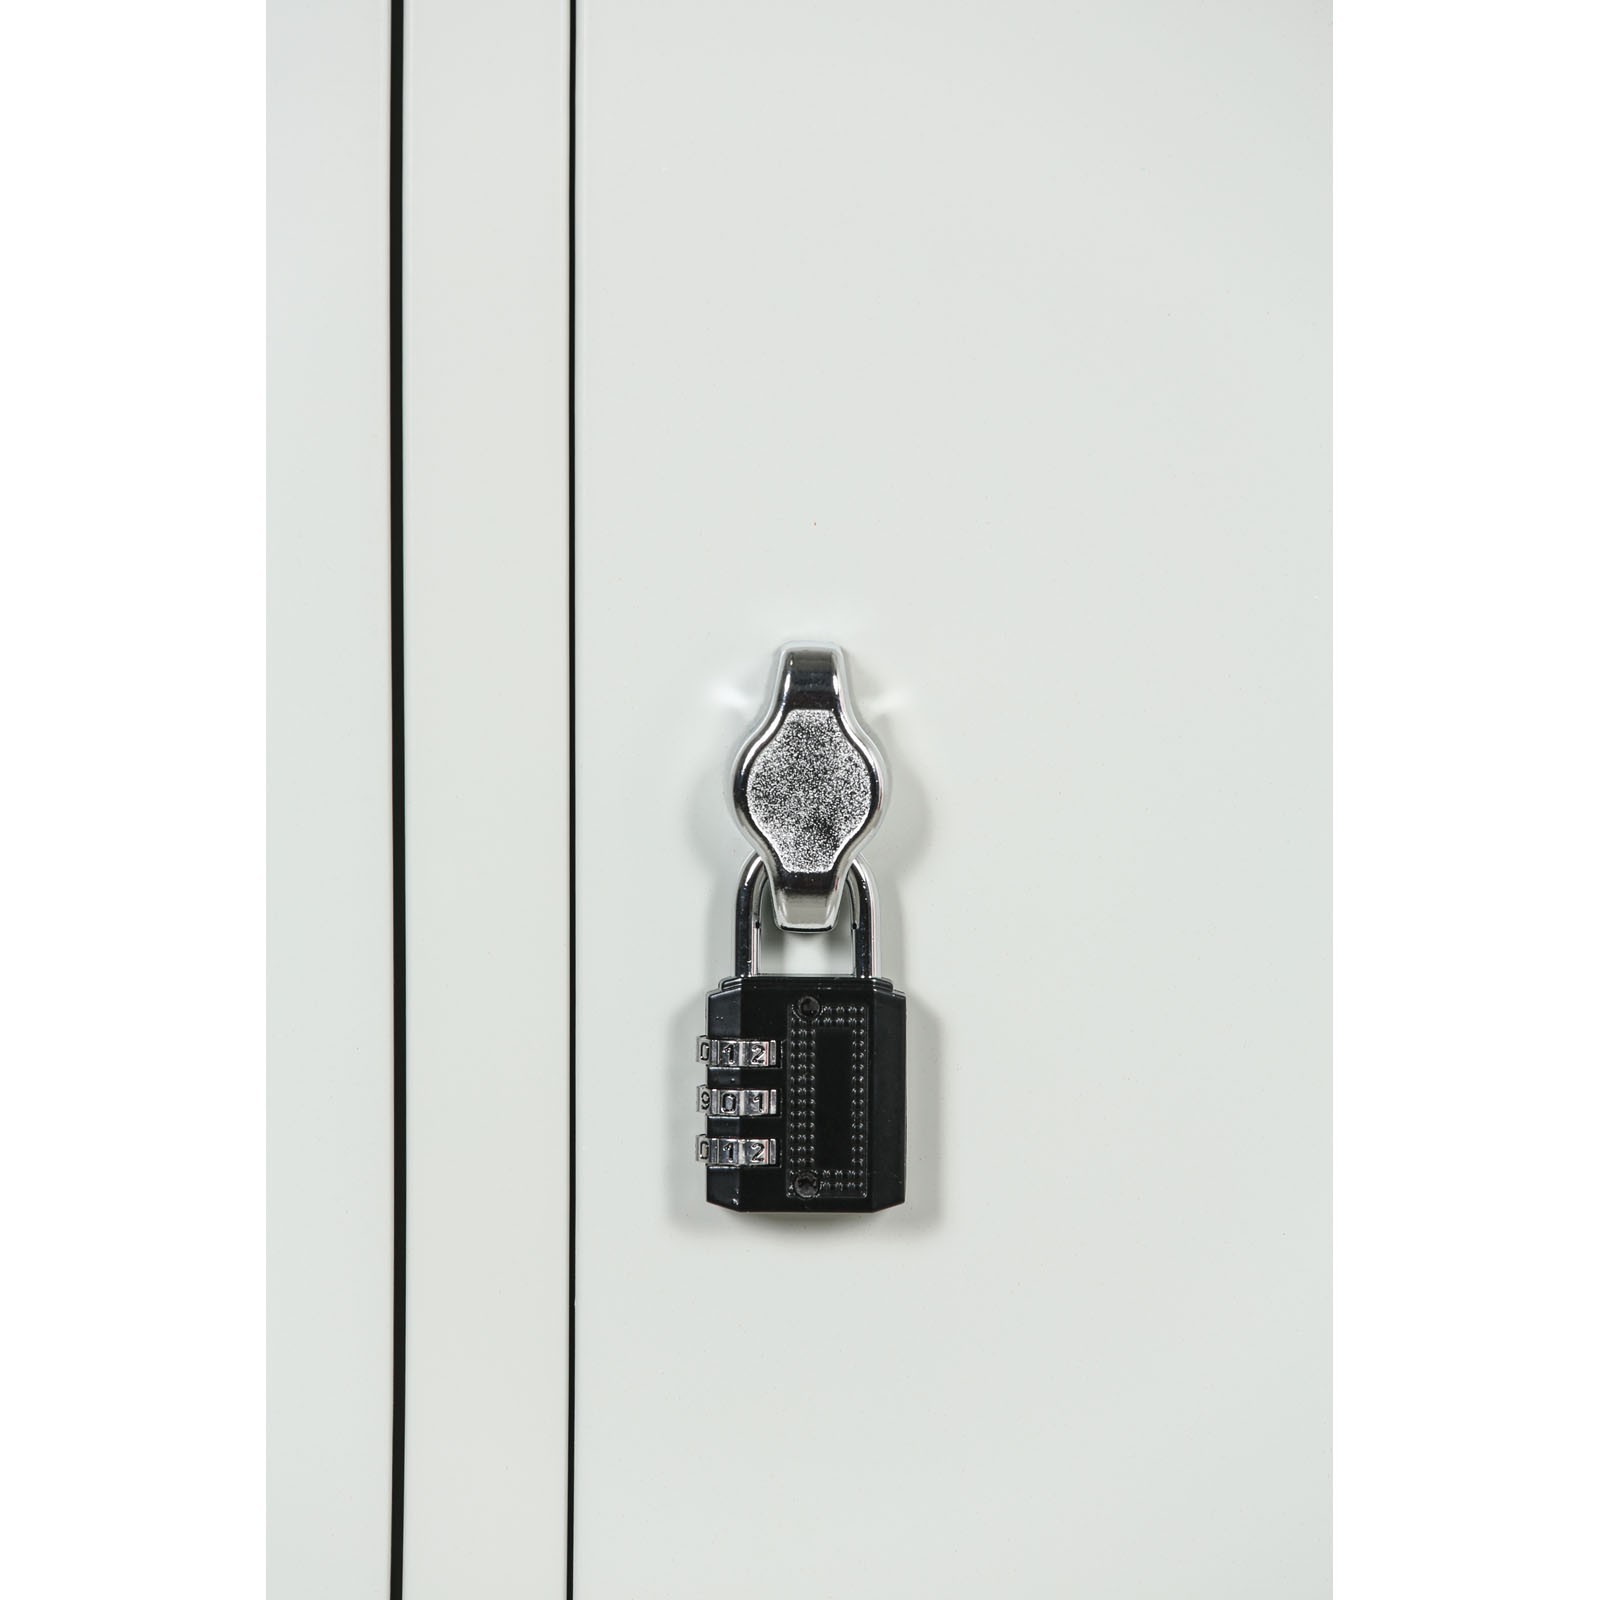 Szafka ubraniowa ze schowkami, 4 schowki, 1850 x 300 x 500 mm, zamek obrotowy, drzwi laminowane, biała